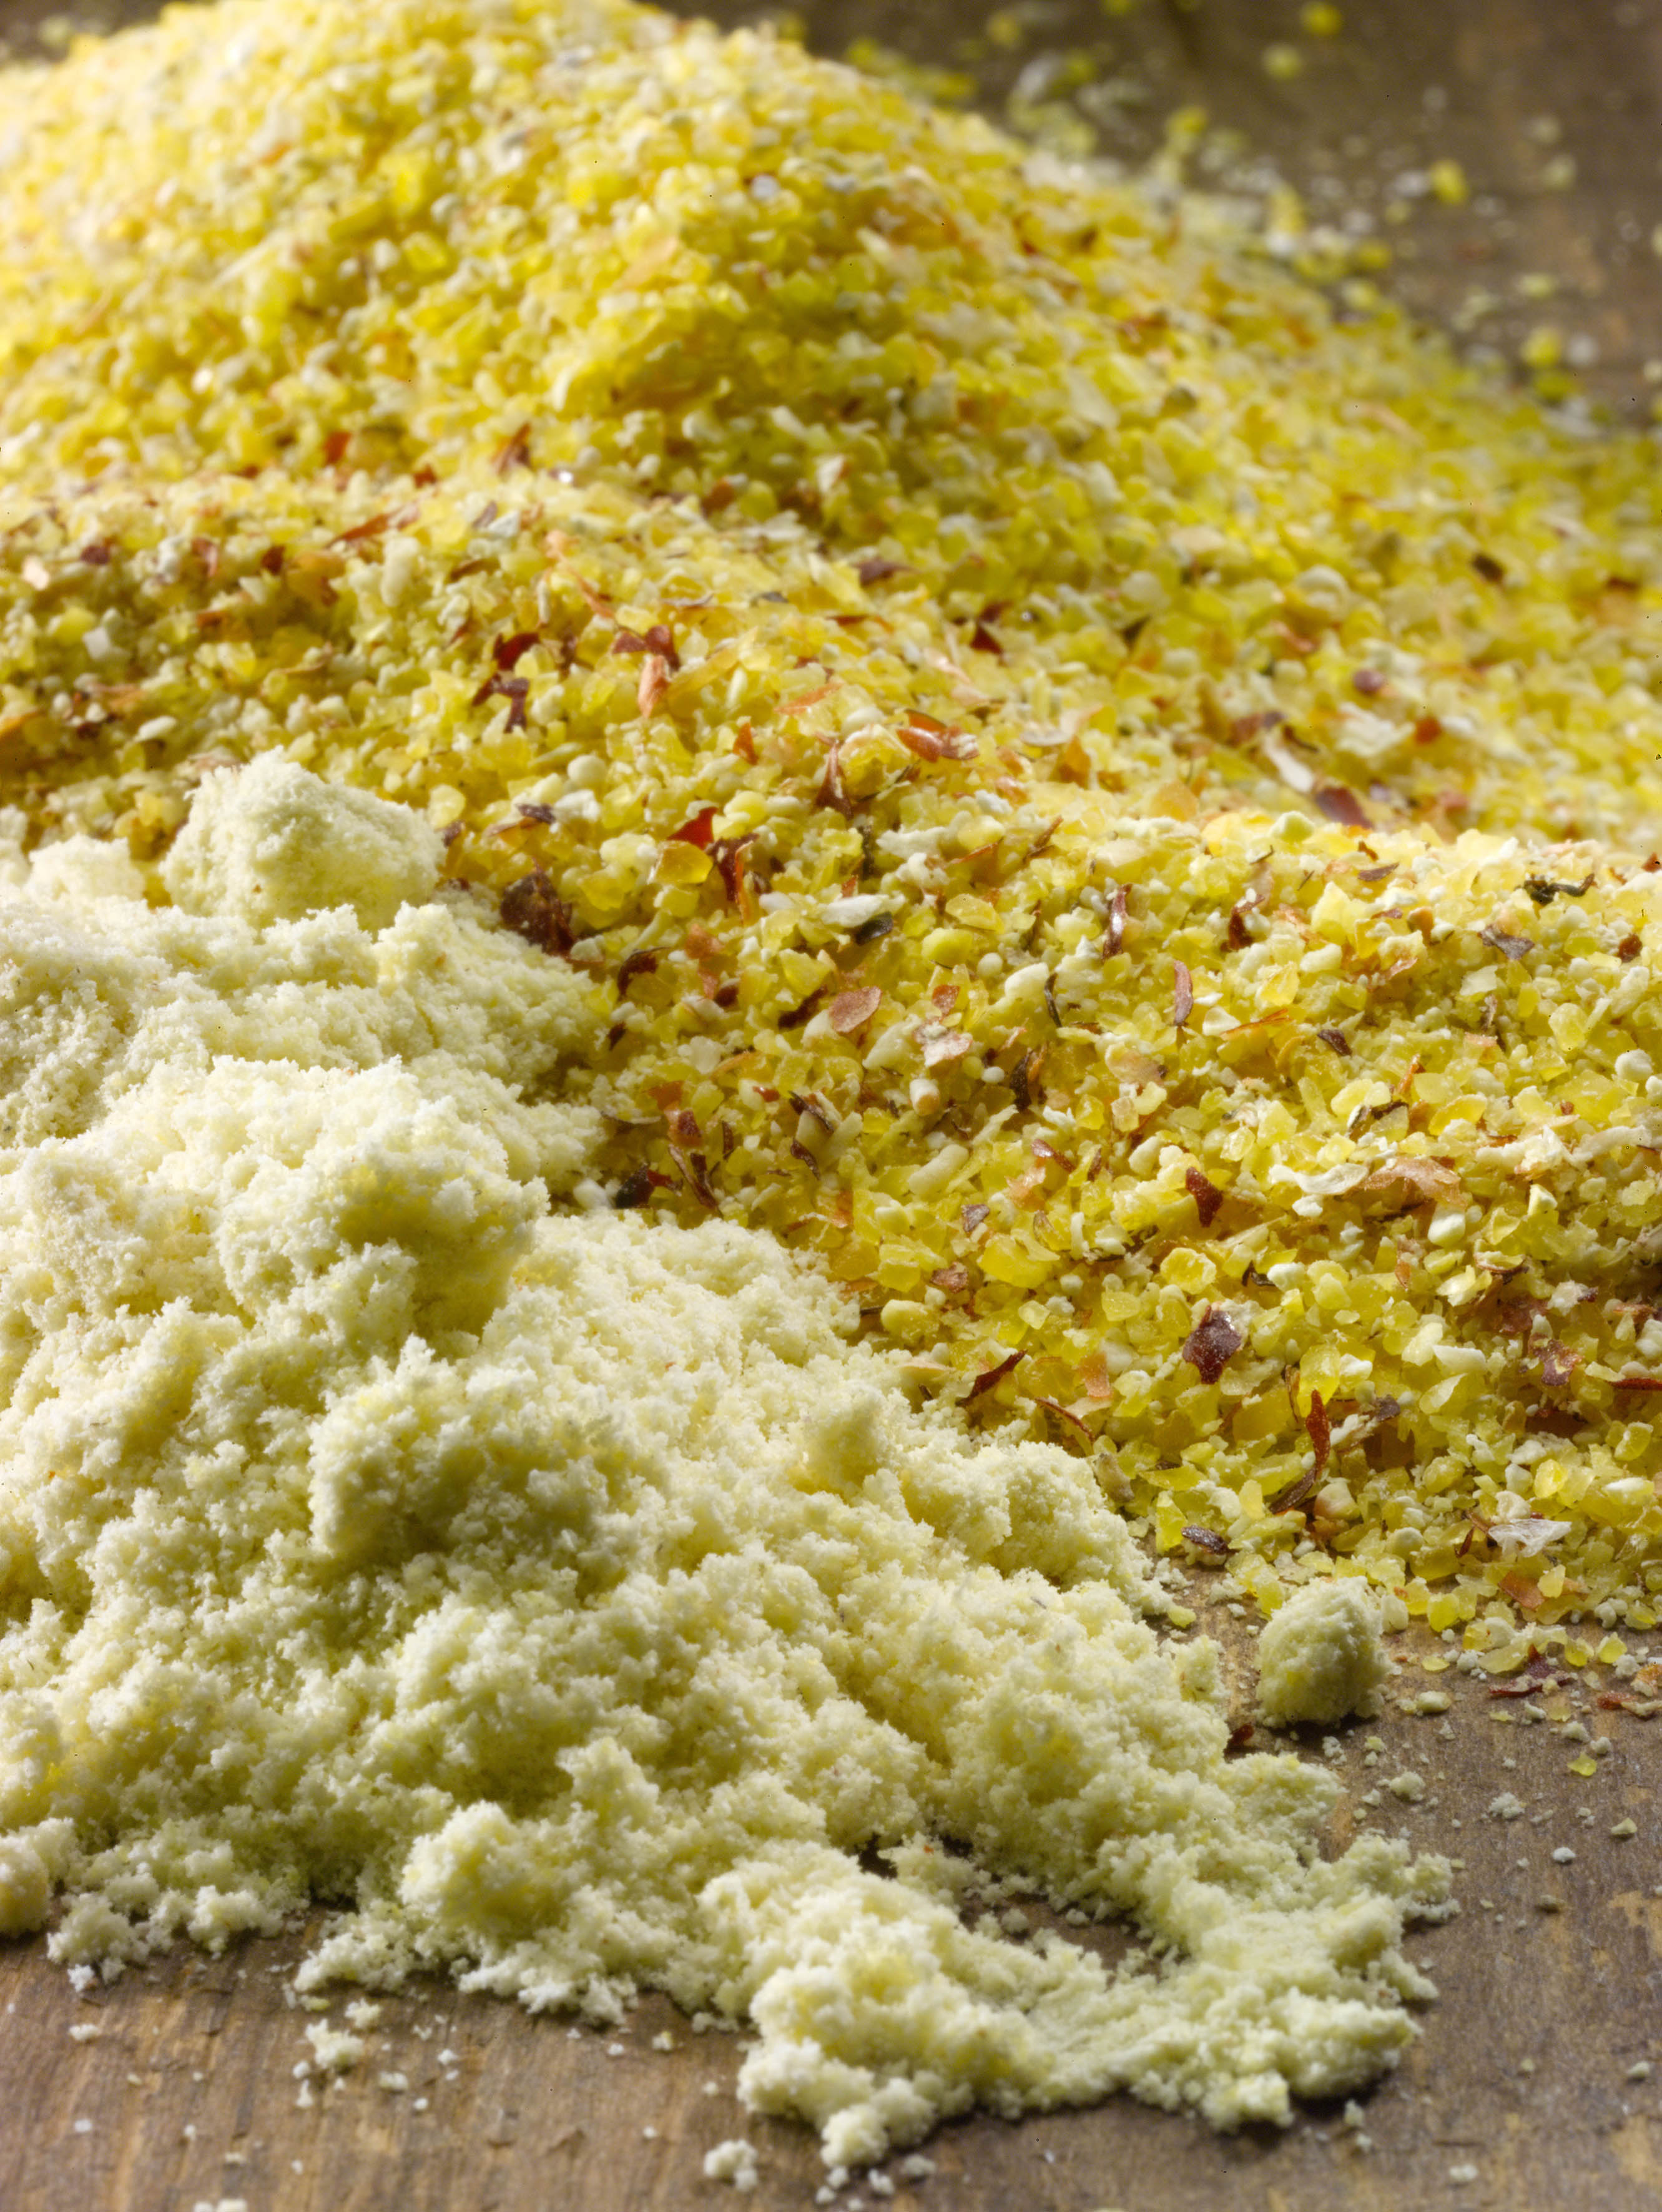 La farine et la polenta sont les deux produits issus du passage du grain de maïs au moulin. La polenta est une mouture à la granulométrie grossière, riche en protéines et de couleur variable allant du blanc cassé à l'orange vif selon les variétés. La farine est de mouture plus fine, blanche à jaune pâle